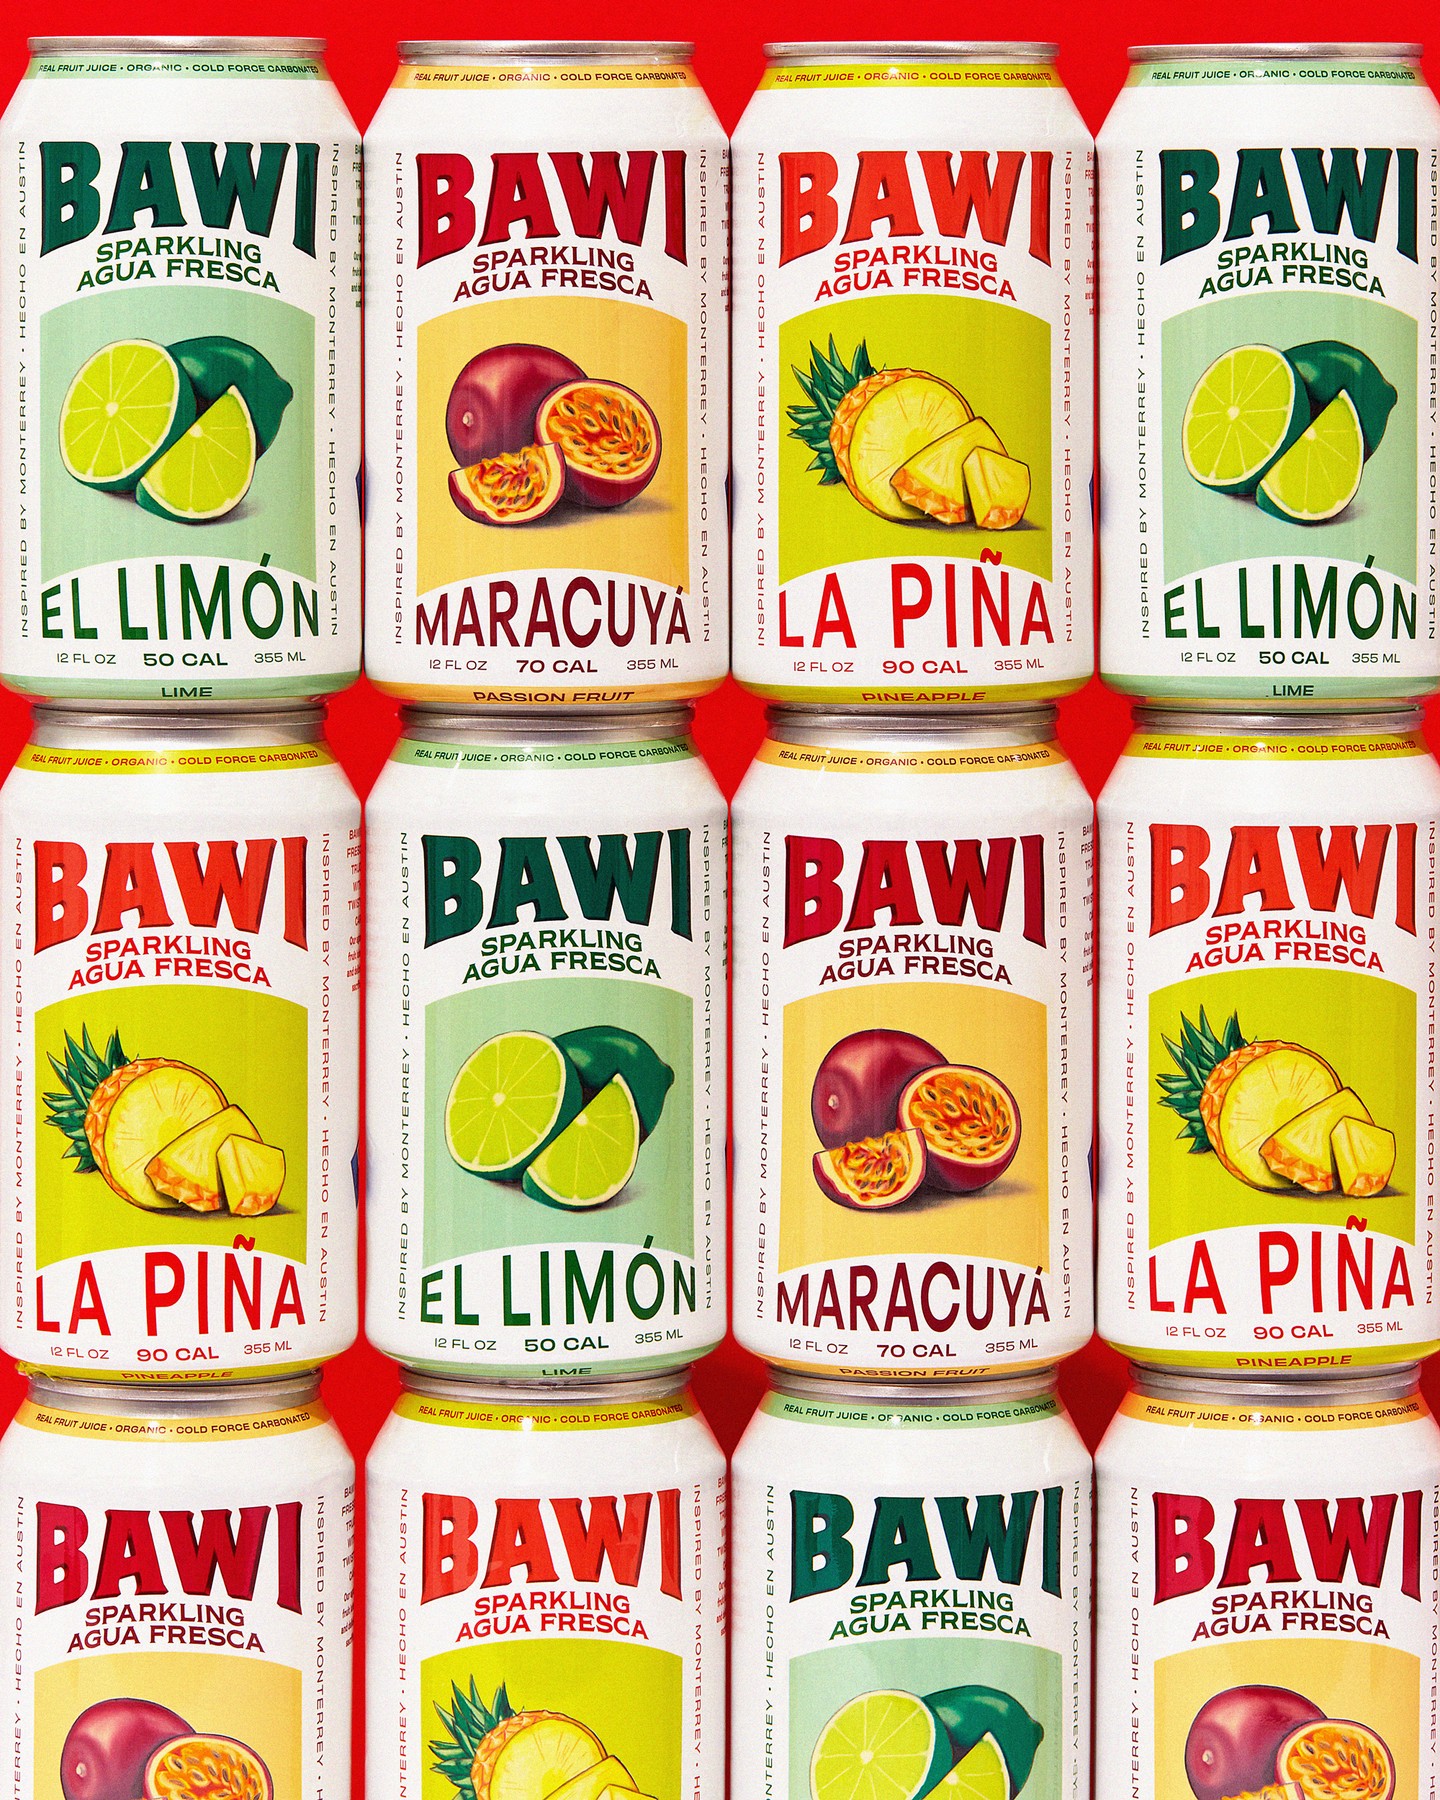 bawi_packaging_03.jpg